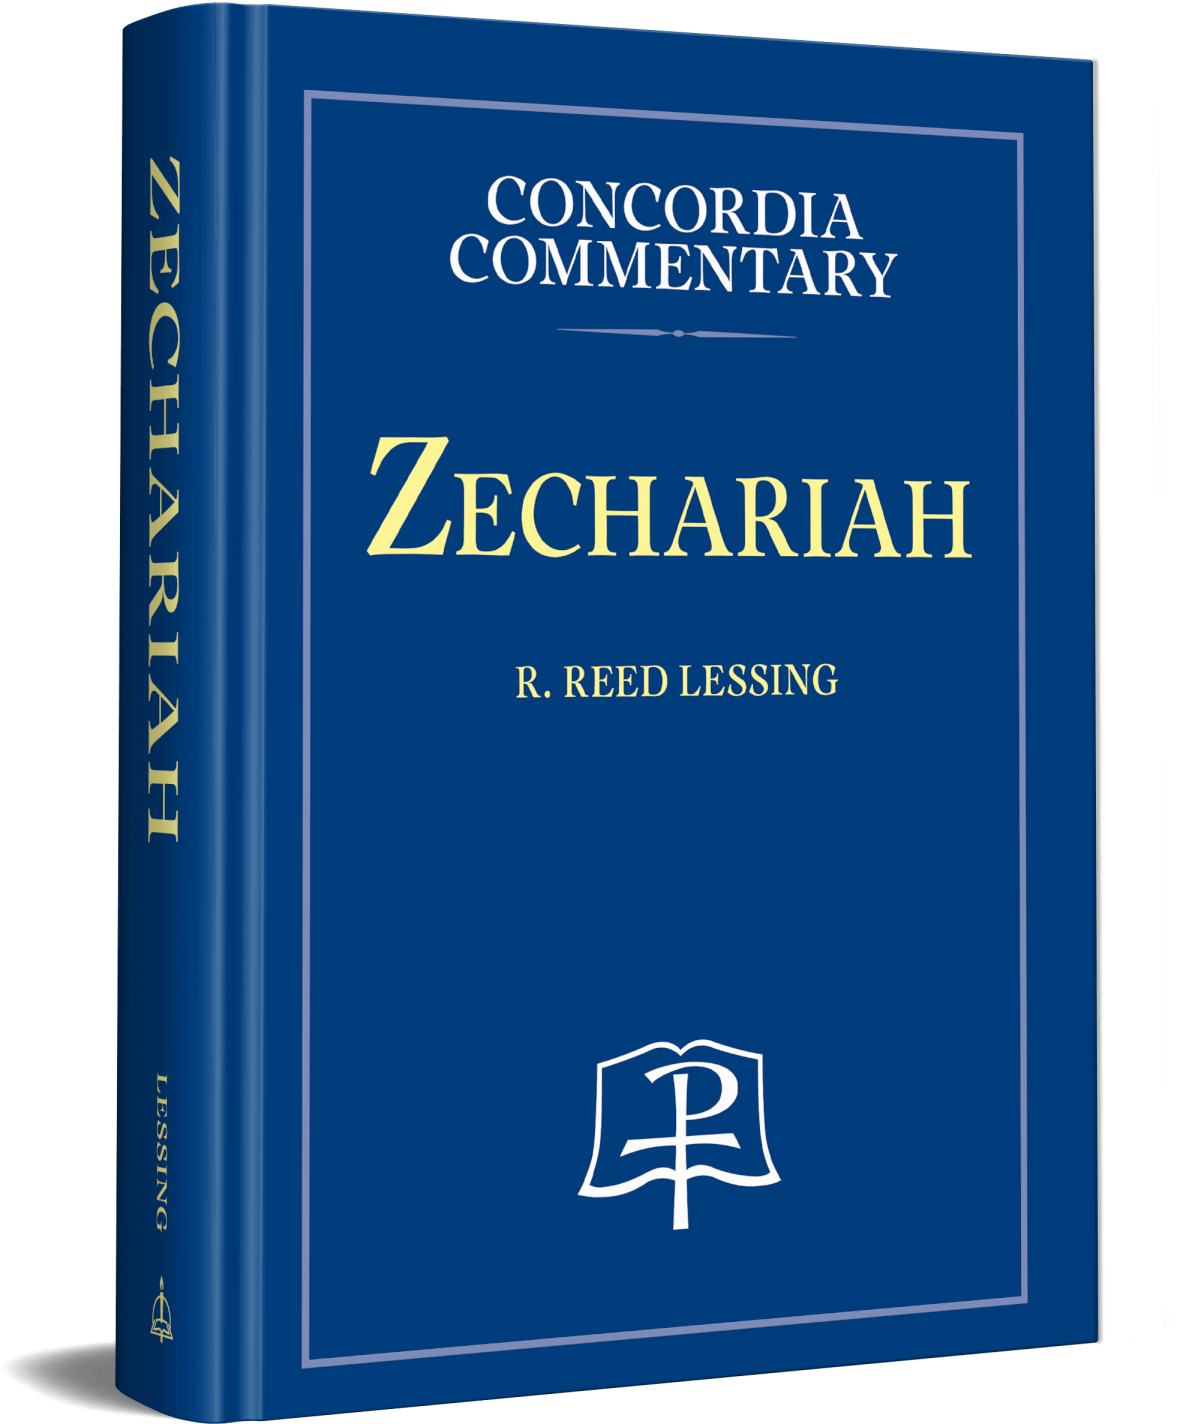 Zechariah: Concordia Commentary